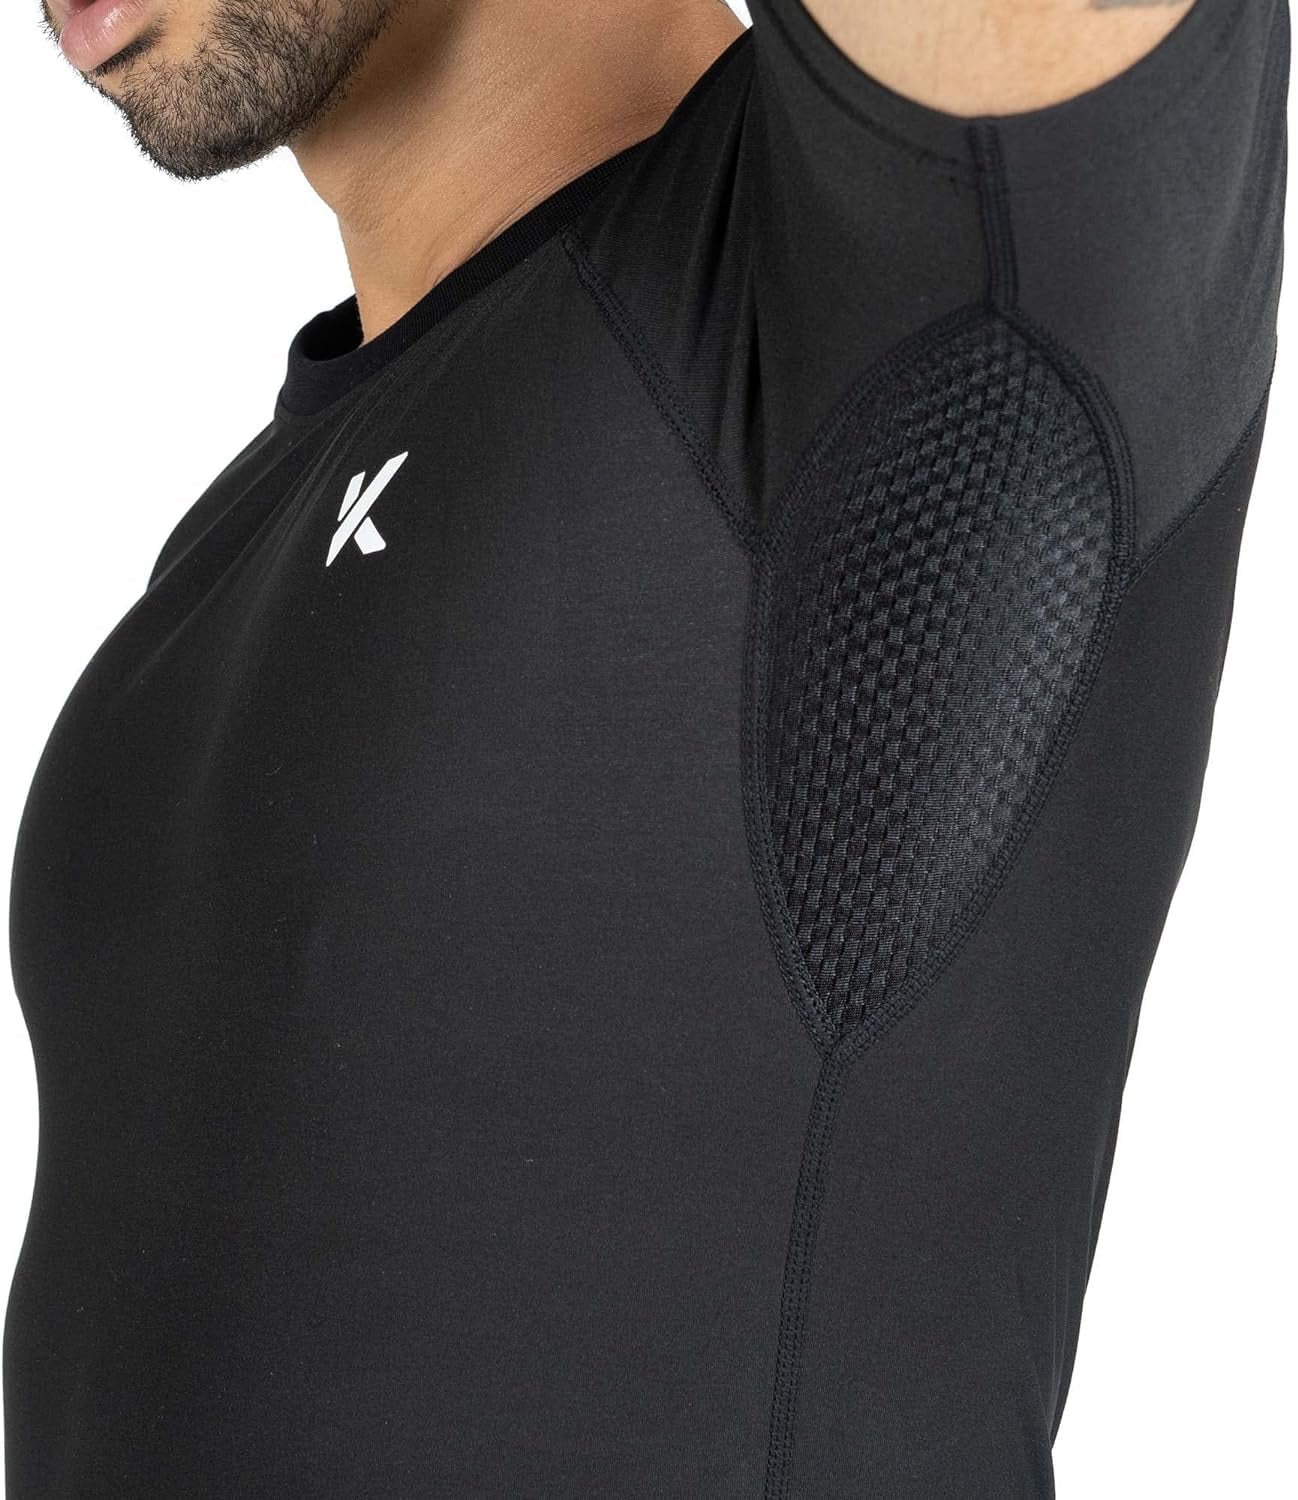 Men'S Sauna Suit Shirt - Heat Trapping Sweat Compression Vest, Shapewear Top, Gym Exercise Versatile Shaper Jacket